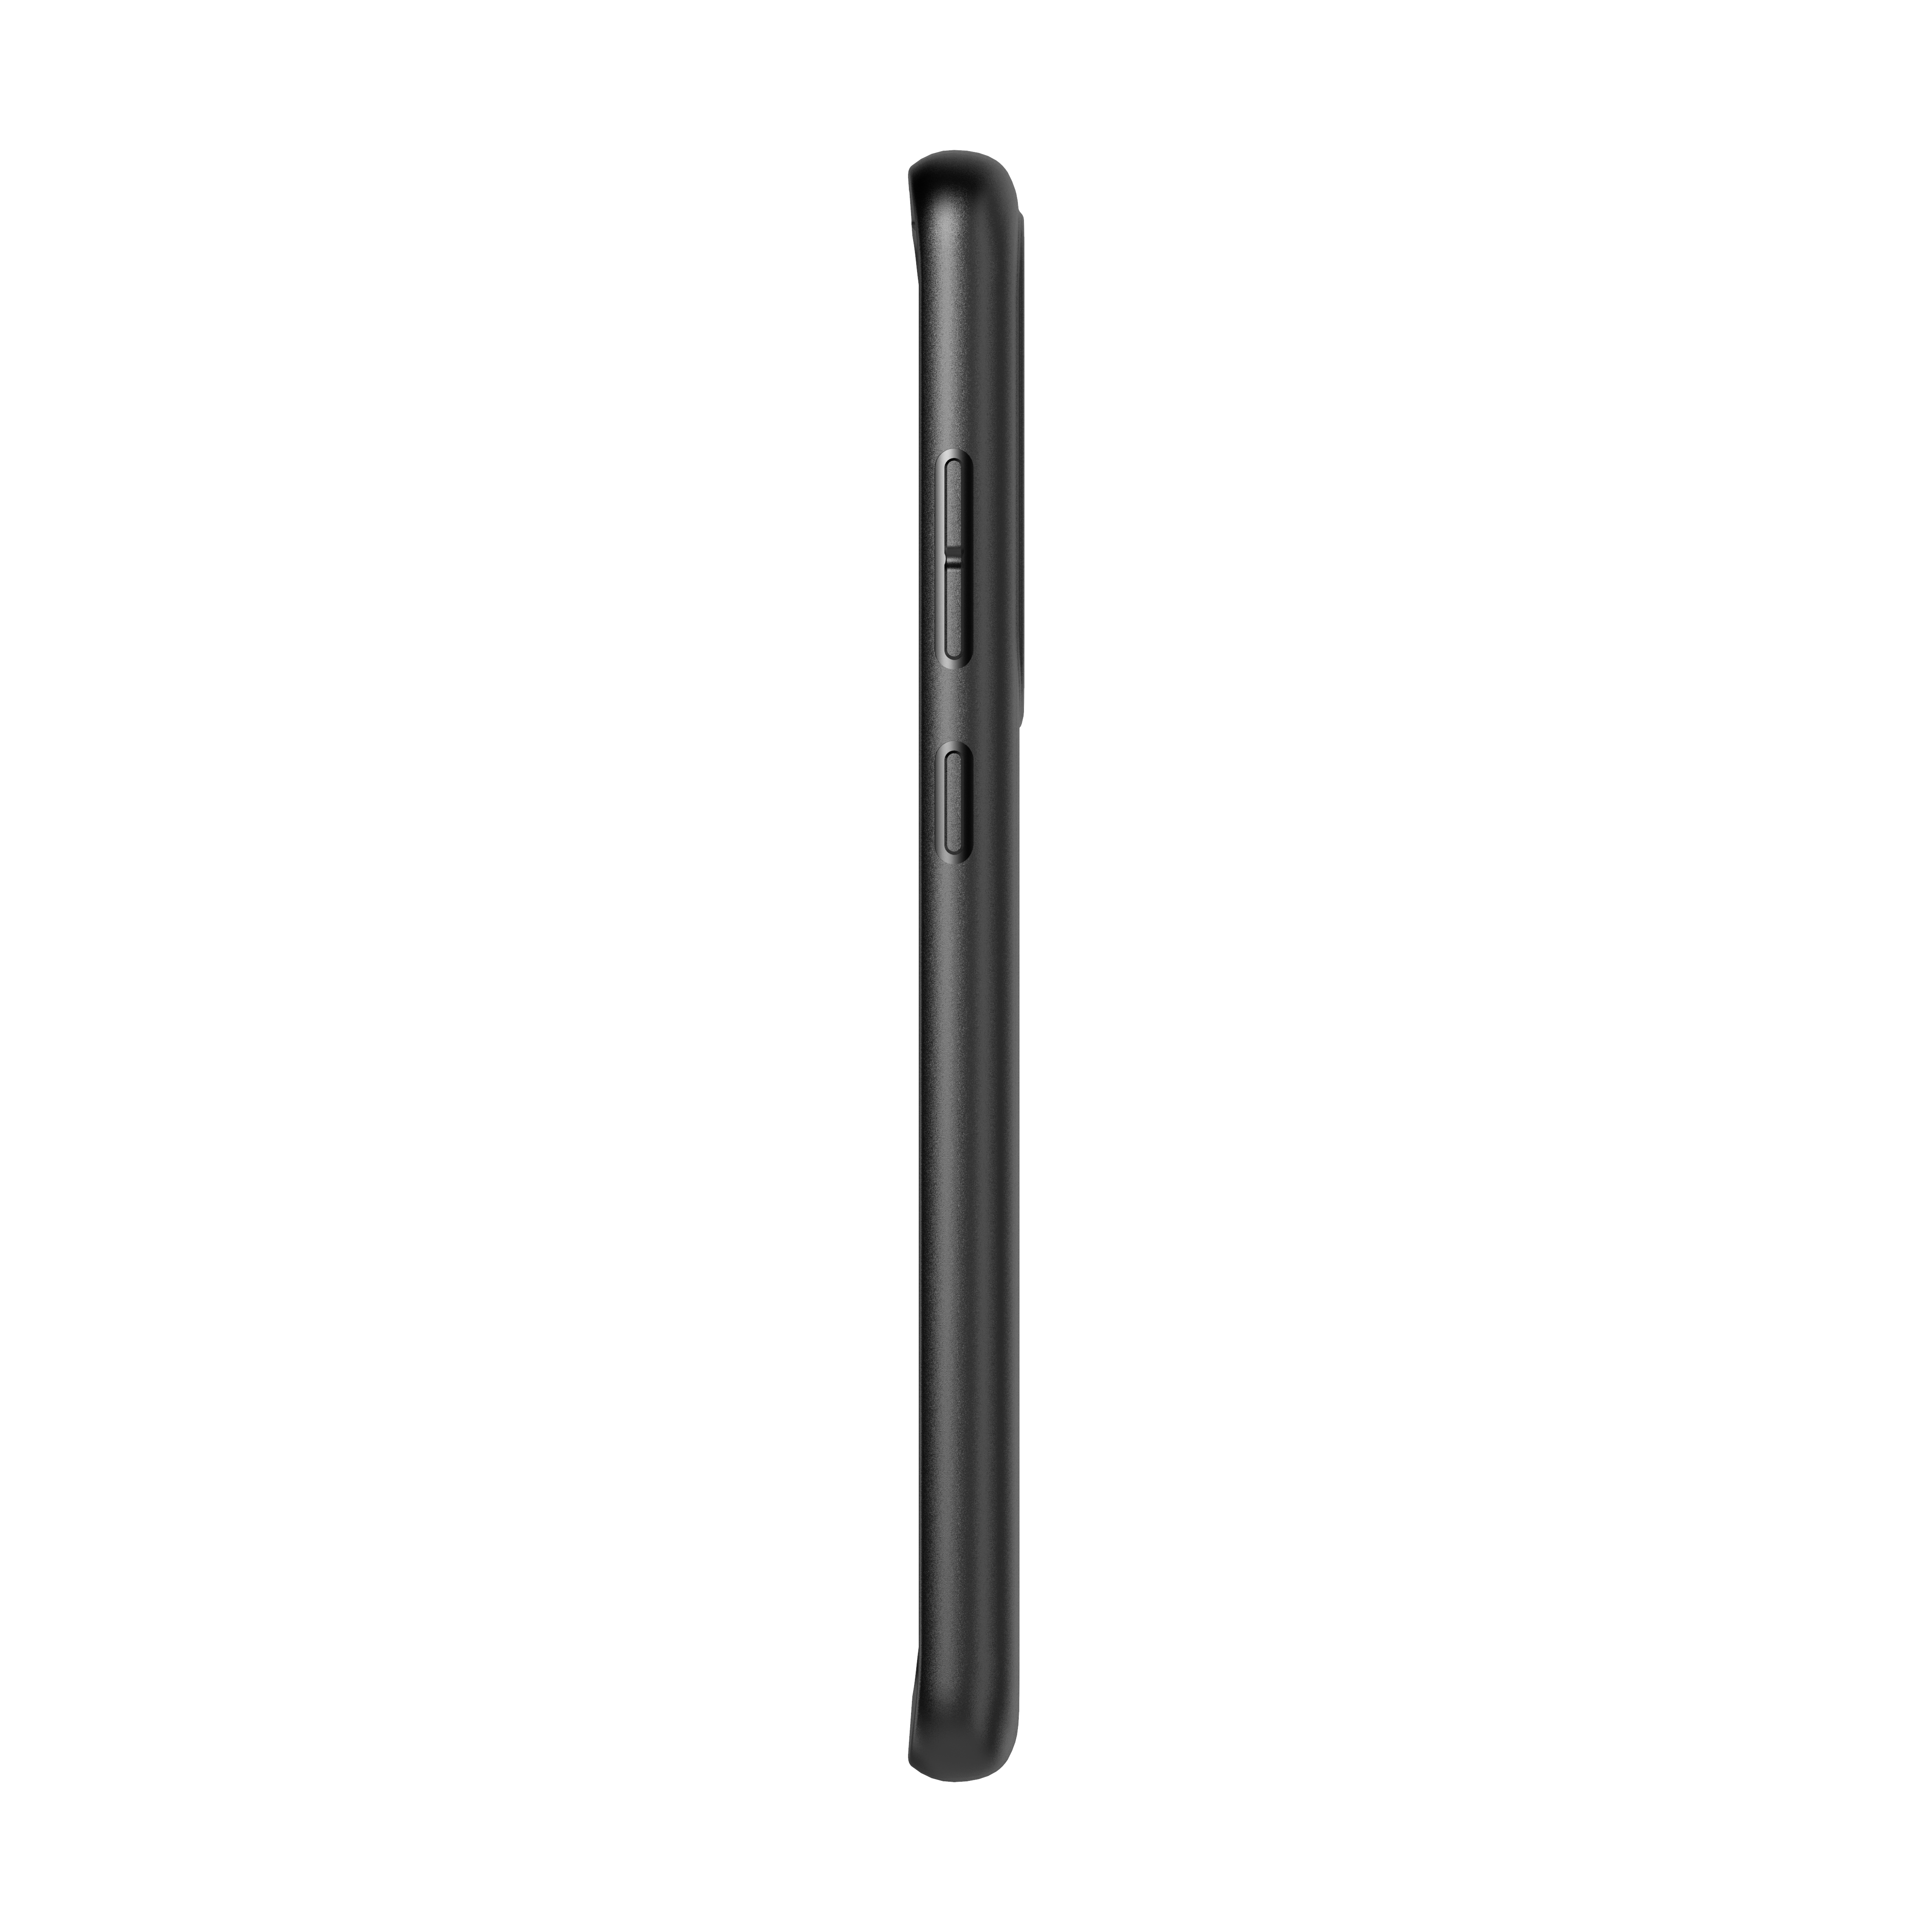 Studio Colour Case Samsung Galaxy S20 Ultra Black